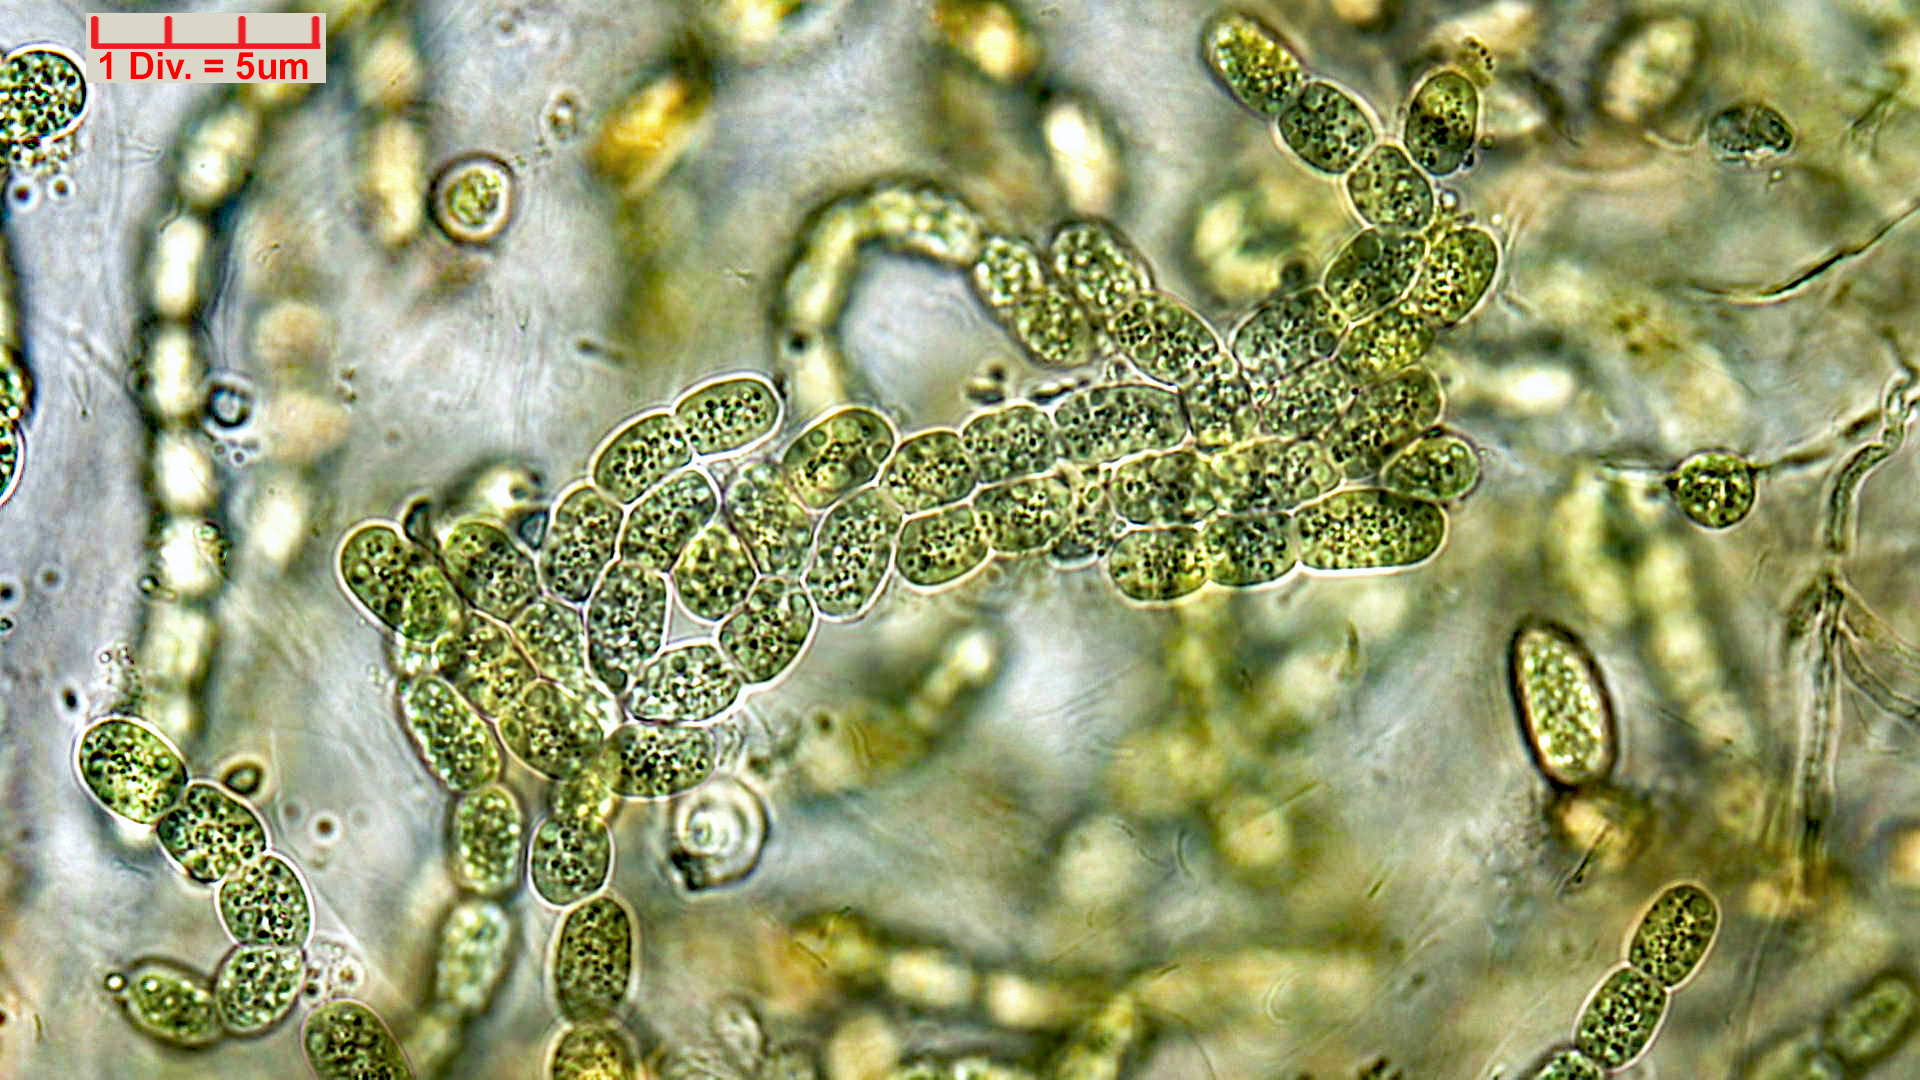 Cyanobacteria/Nostocales/Nostocaceae/Desmonostoc/muscorum/desmonostoc-muscorum-592.jpg